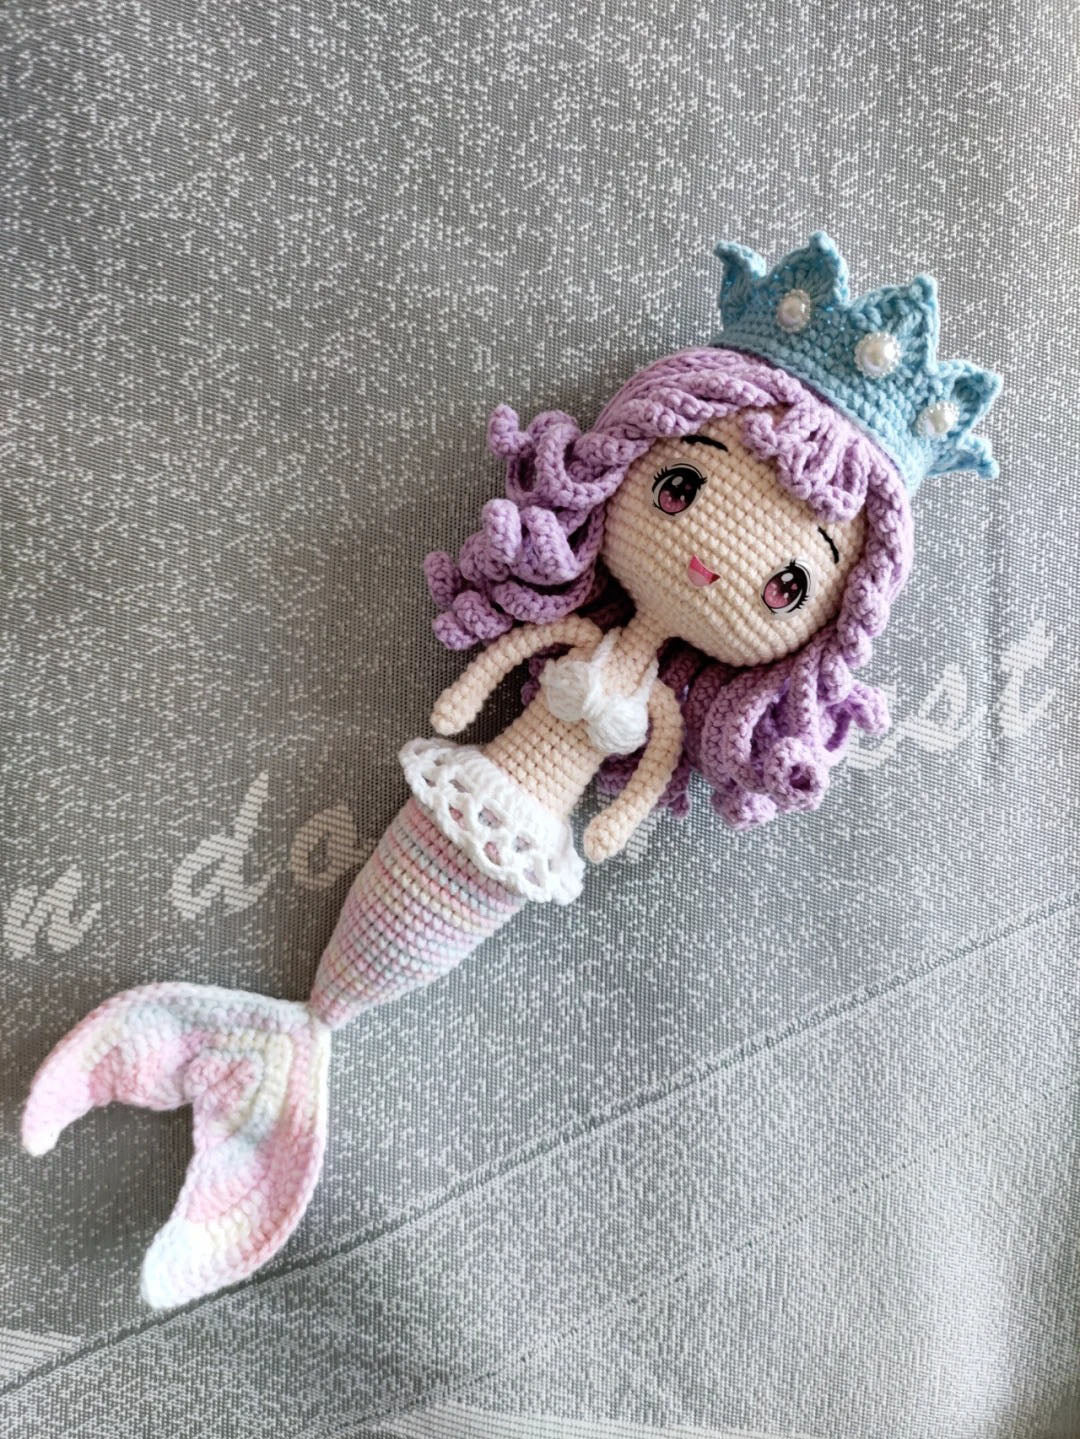 Crown Mermaid Crochet Pattern